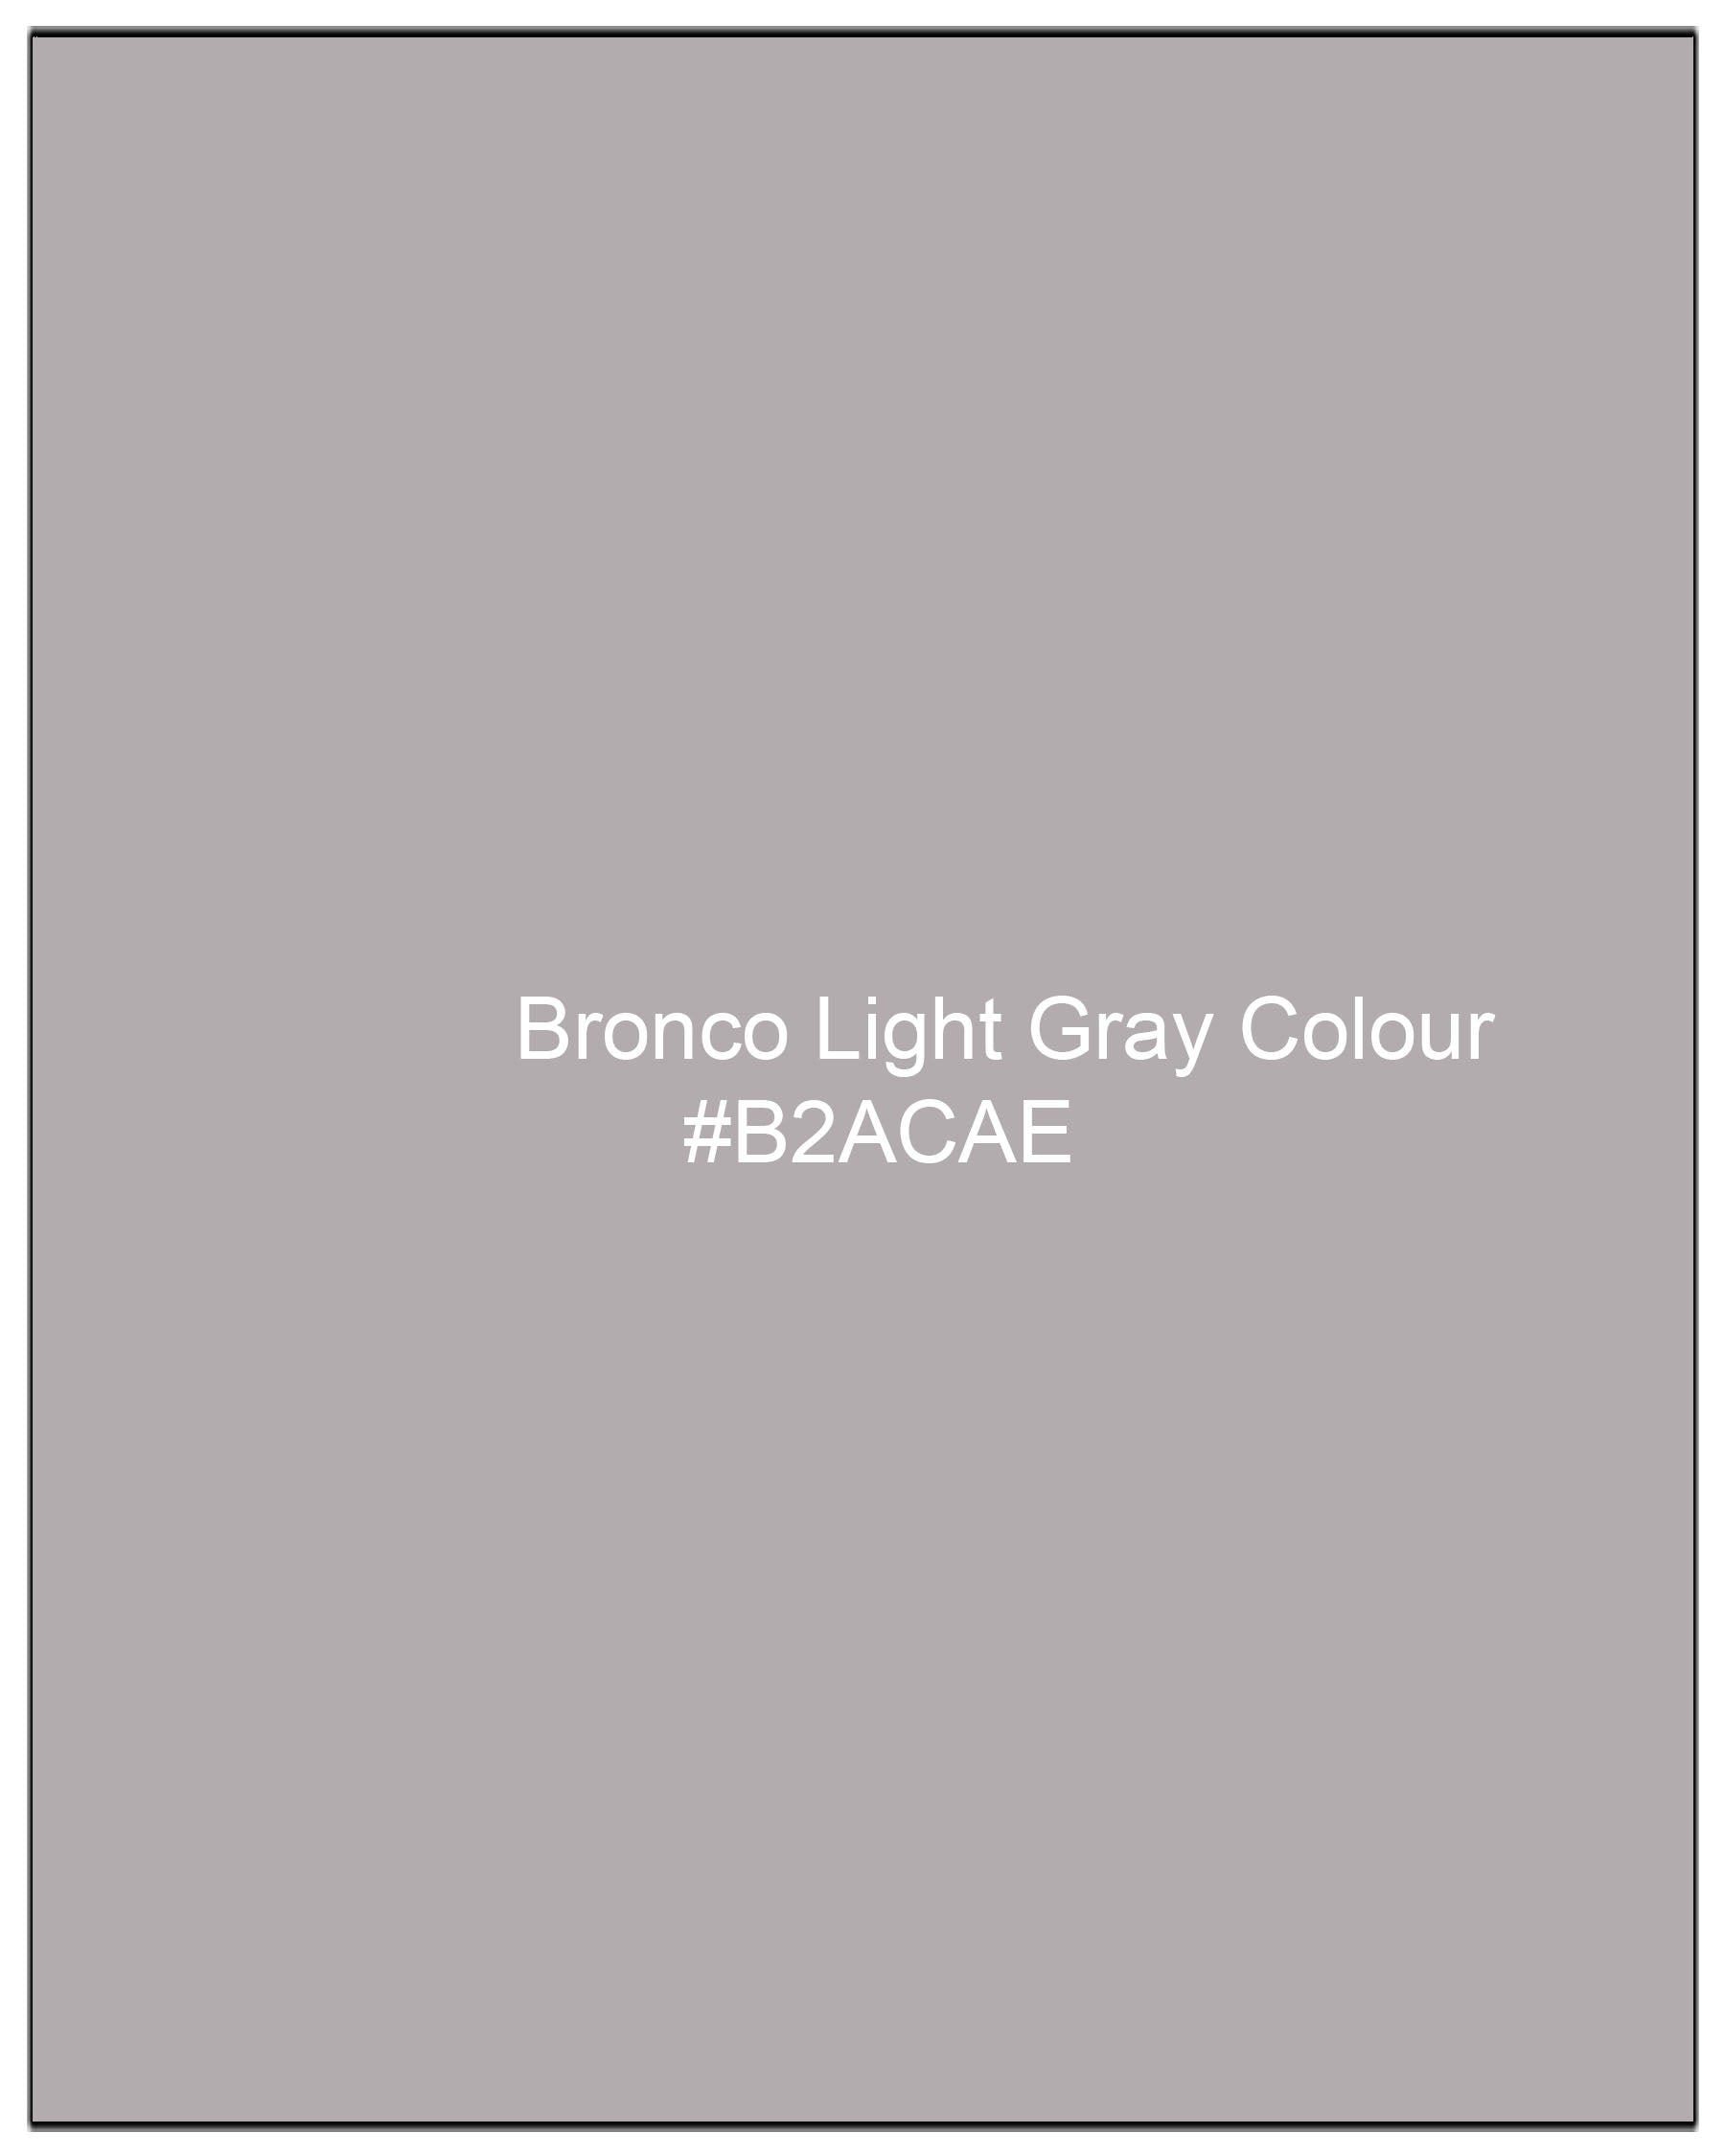 Bronco Light Gray Plaid Cross Buttoned Bandhgala Blazer BL1962-CBG-36, BL1962-CBG-38, BL1962-CBG-40, BL1962-CBG-42, BL1962-CBG-44, BL1962-CBG-46, BL1962-CBG-48, BL1962-CBG-50, BL1962-CBG-52, BL1962-CBG-54, BL1962-CBG-56, BL1962-CBG-58, BL1962-CBG-60